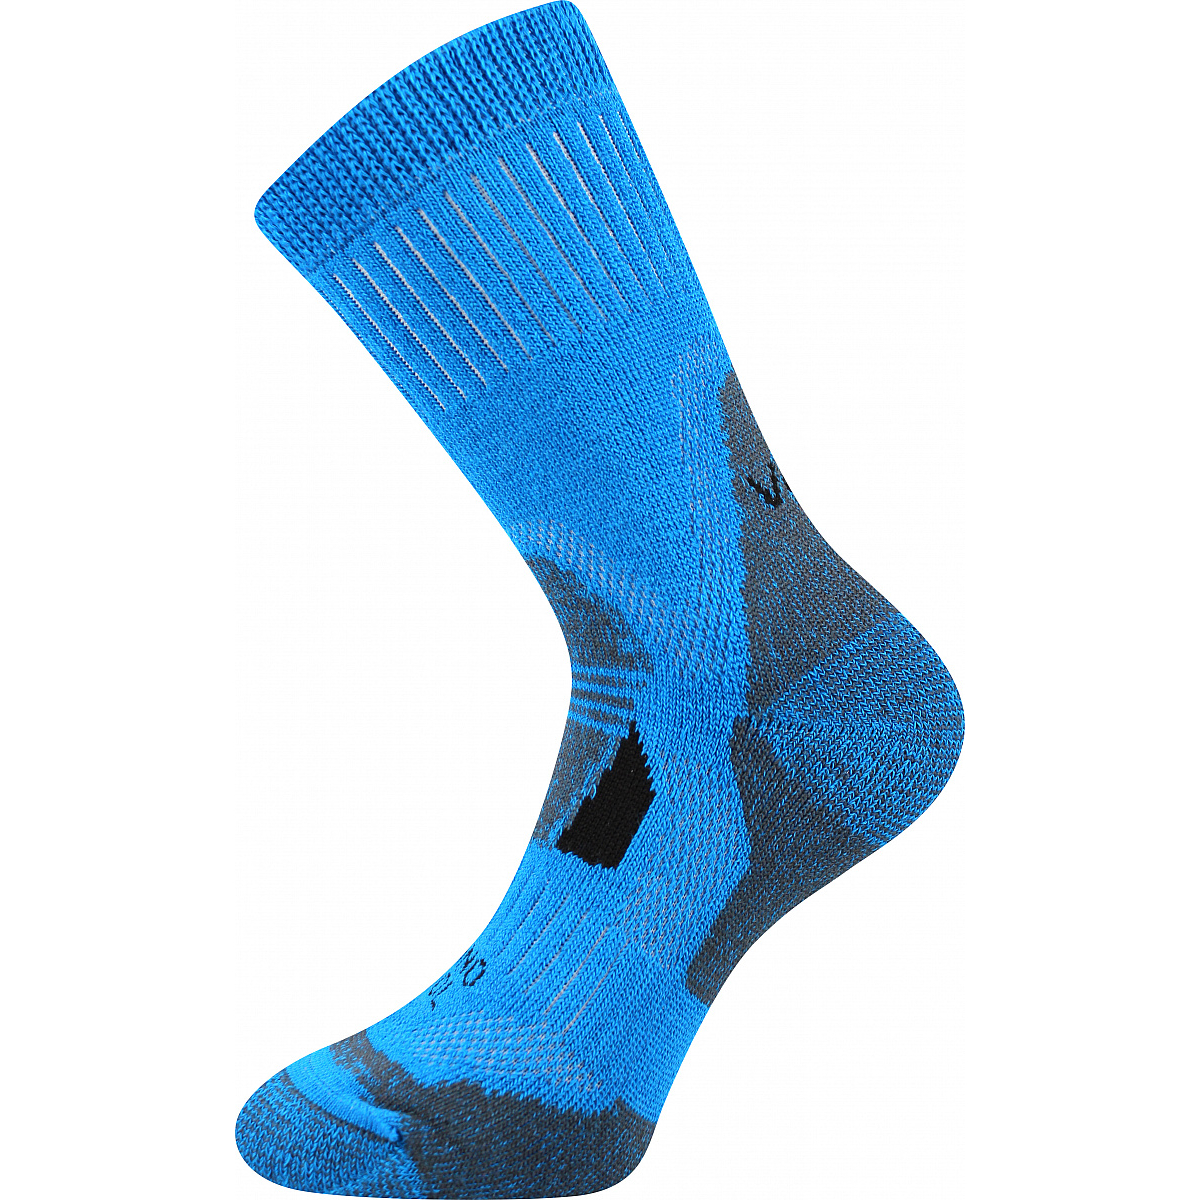 Extra teplé vlněné ponožky Voxx Stabil - modré, 43-46